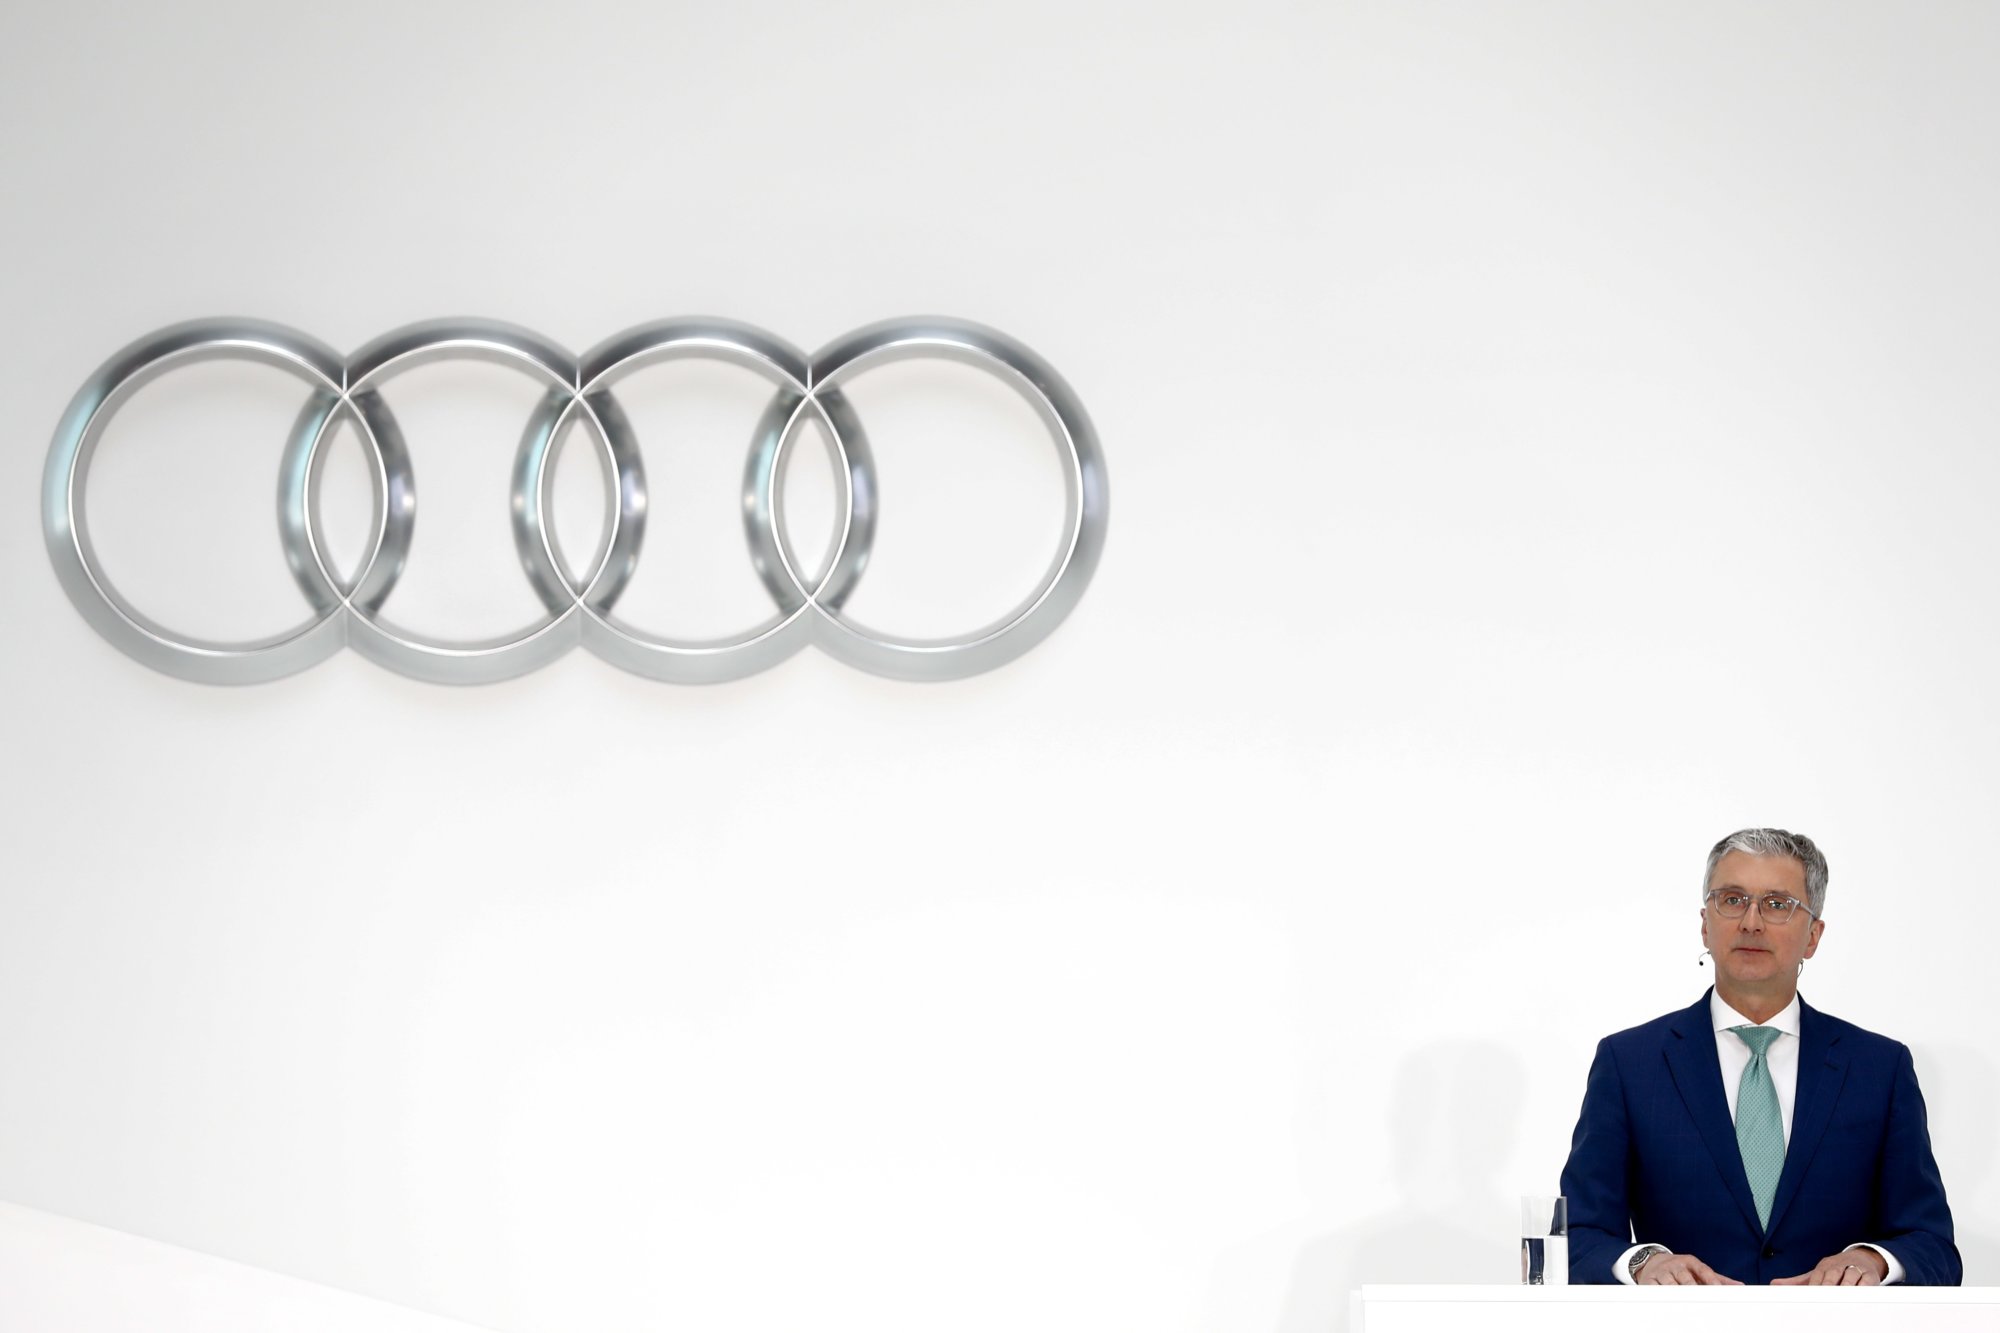 Nemecký emisný škandál dostihol aj šéfa automobilky Audi, Rupert Stadler poputuje do väzby – Denník N